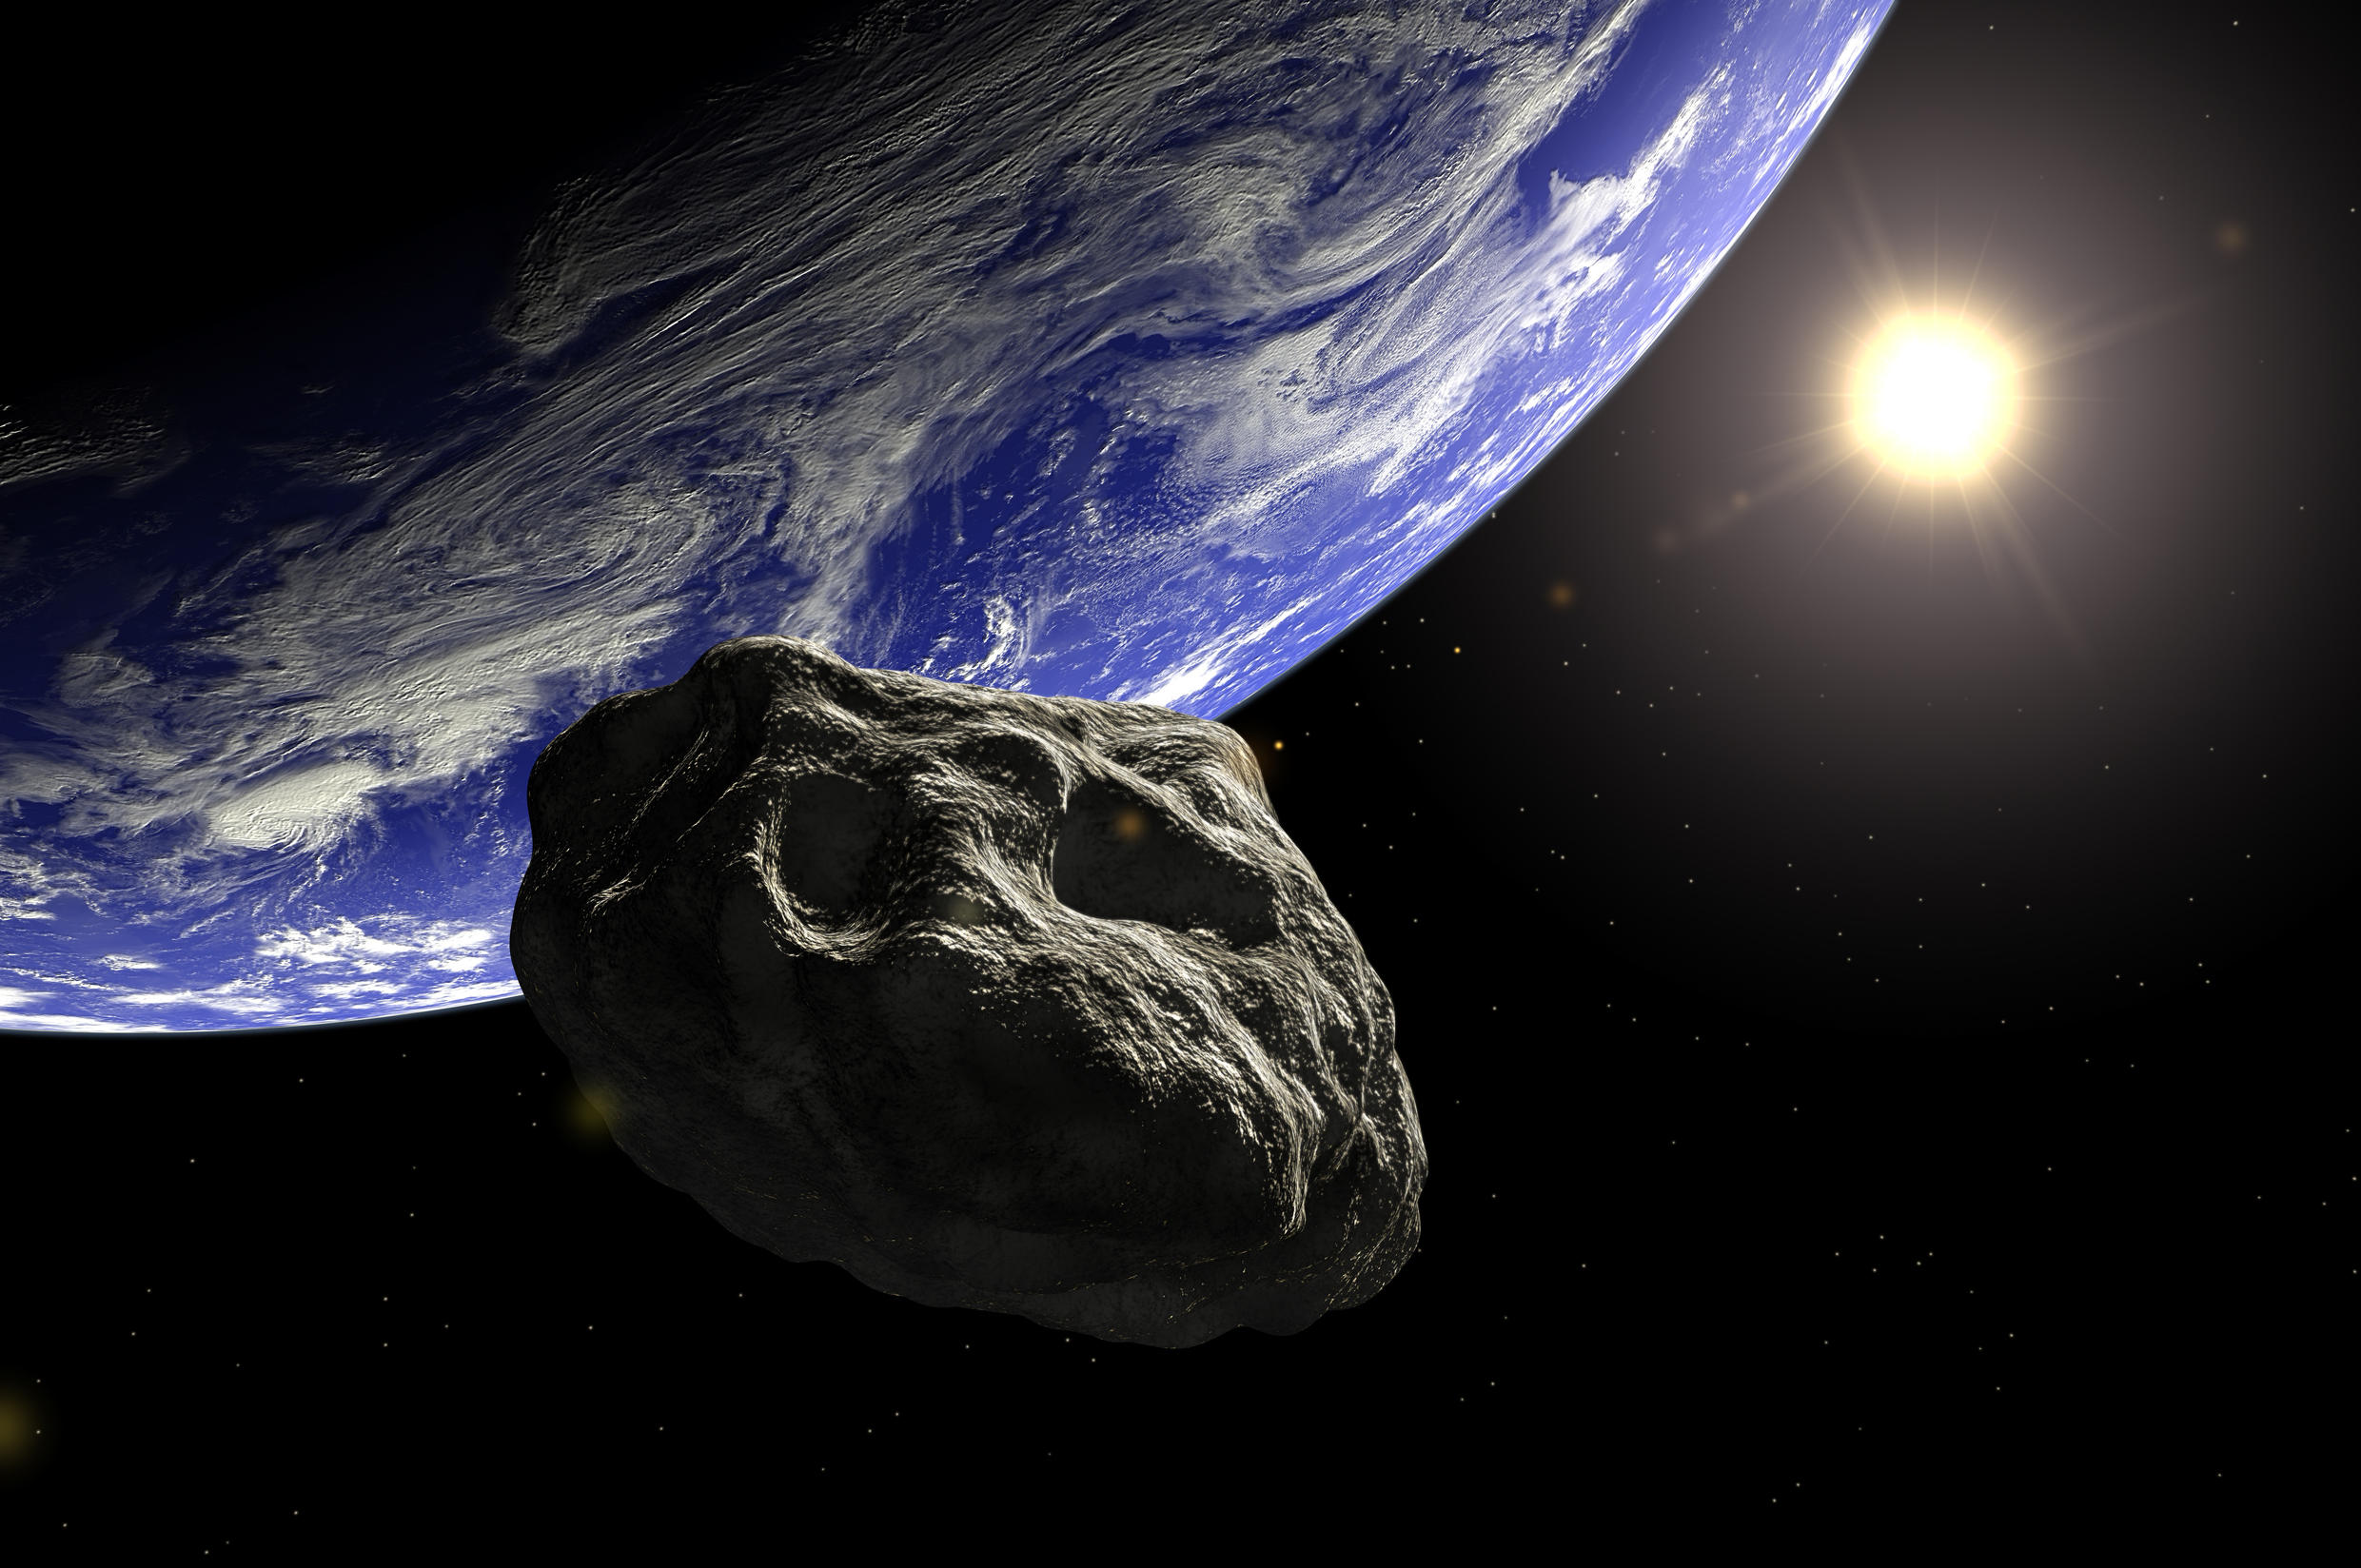 عبور سیارکی شبیه جمجمه از کنار زمین + عکس